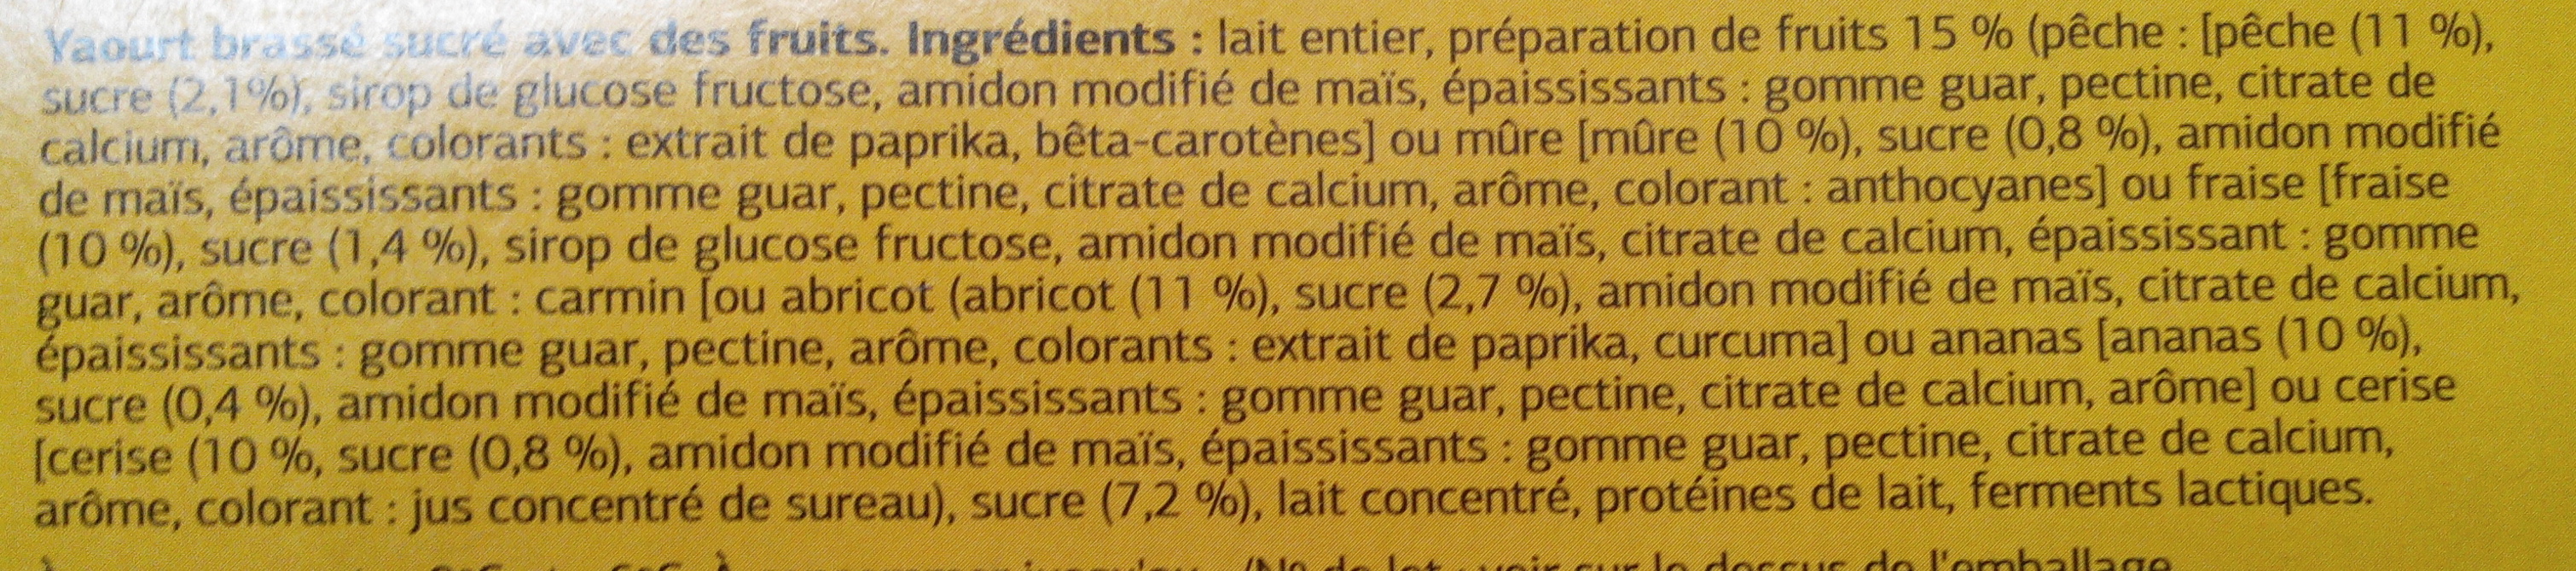 Yaourts aux Fruits (12 pots) - Ingrédients